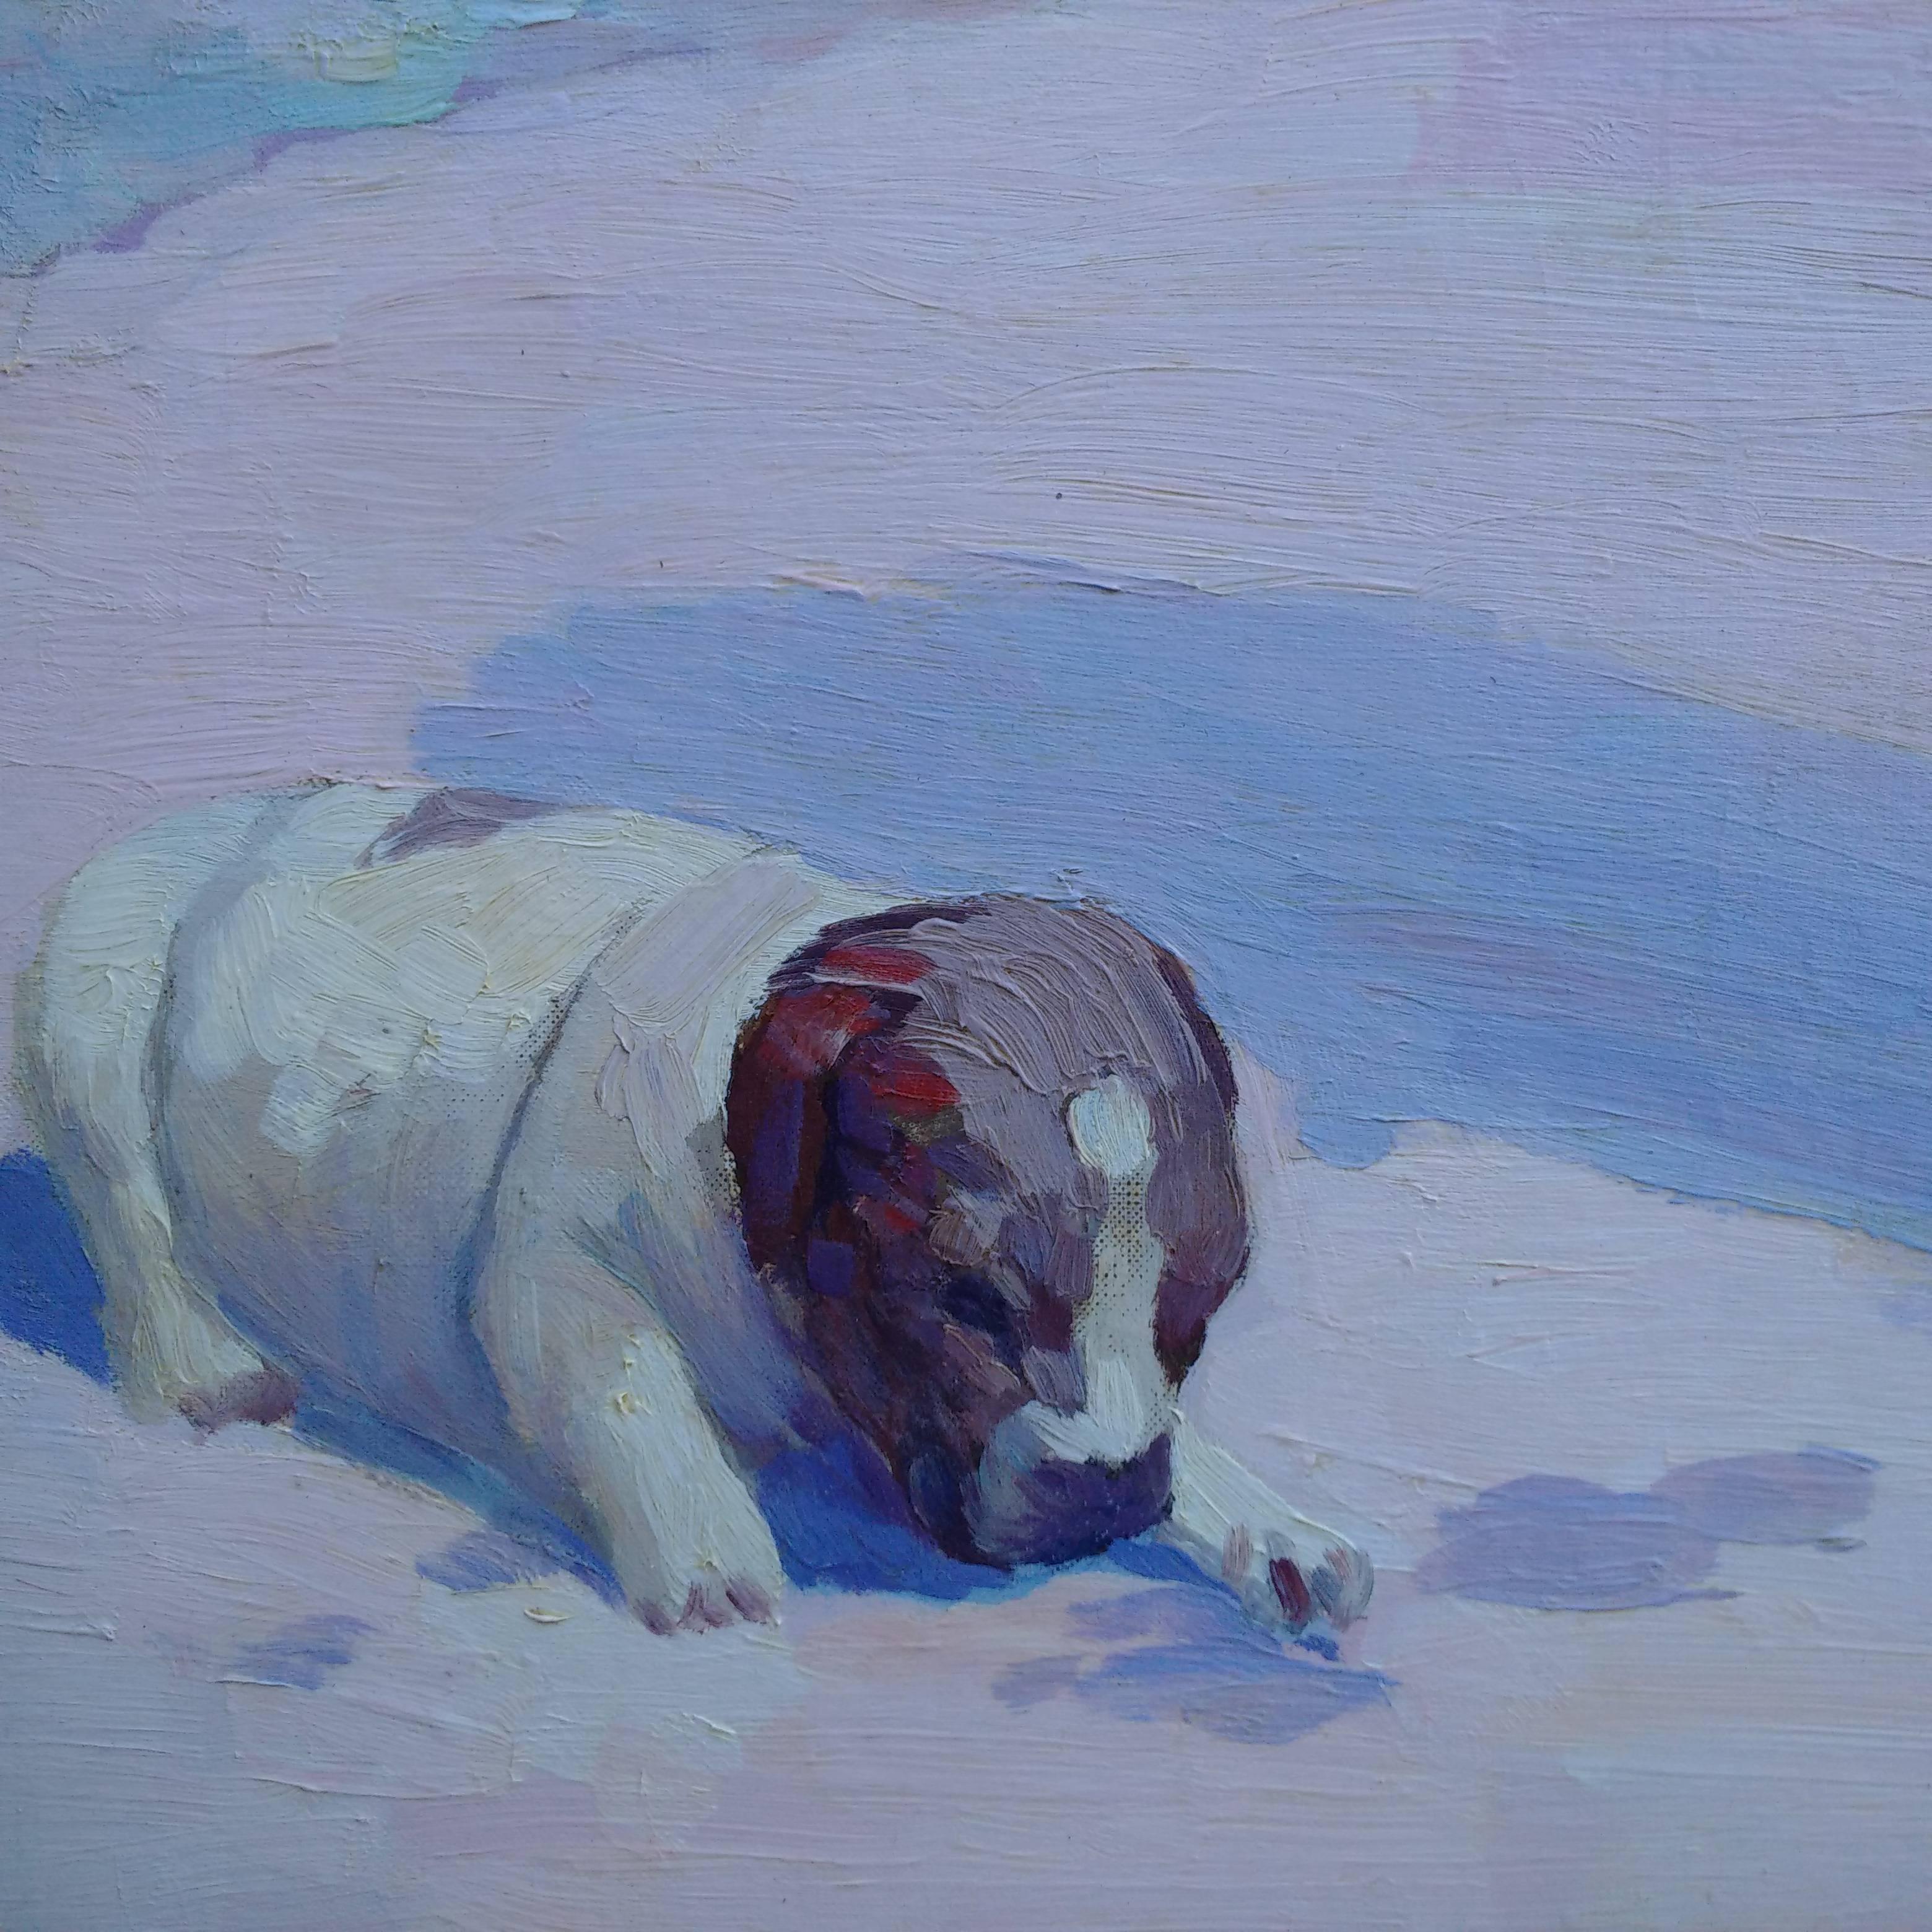 Child and Baby Dogs on the Beach (Enfant et bébé chiens à la plage), Nicolas-Saleem Macsoud - Impressionnisme américain Painting par Nicholas Saleem Macsoud